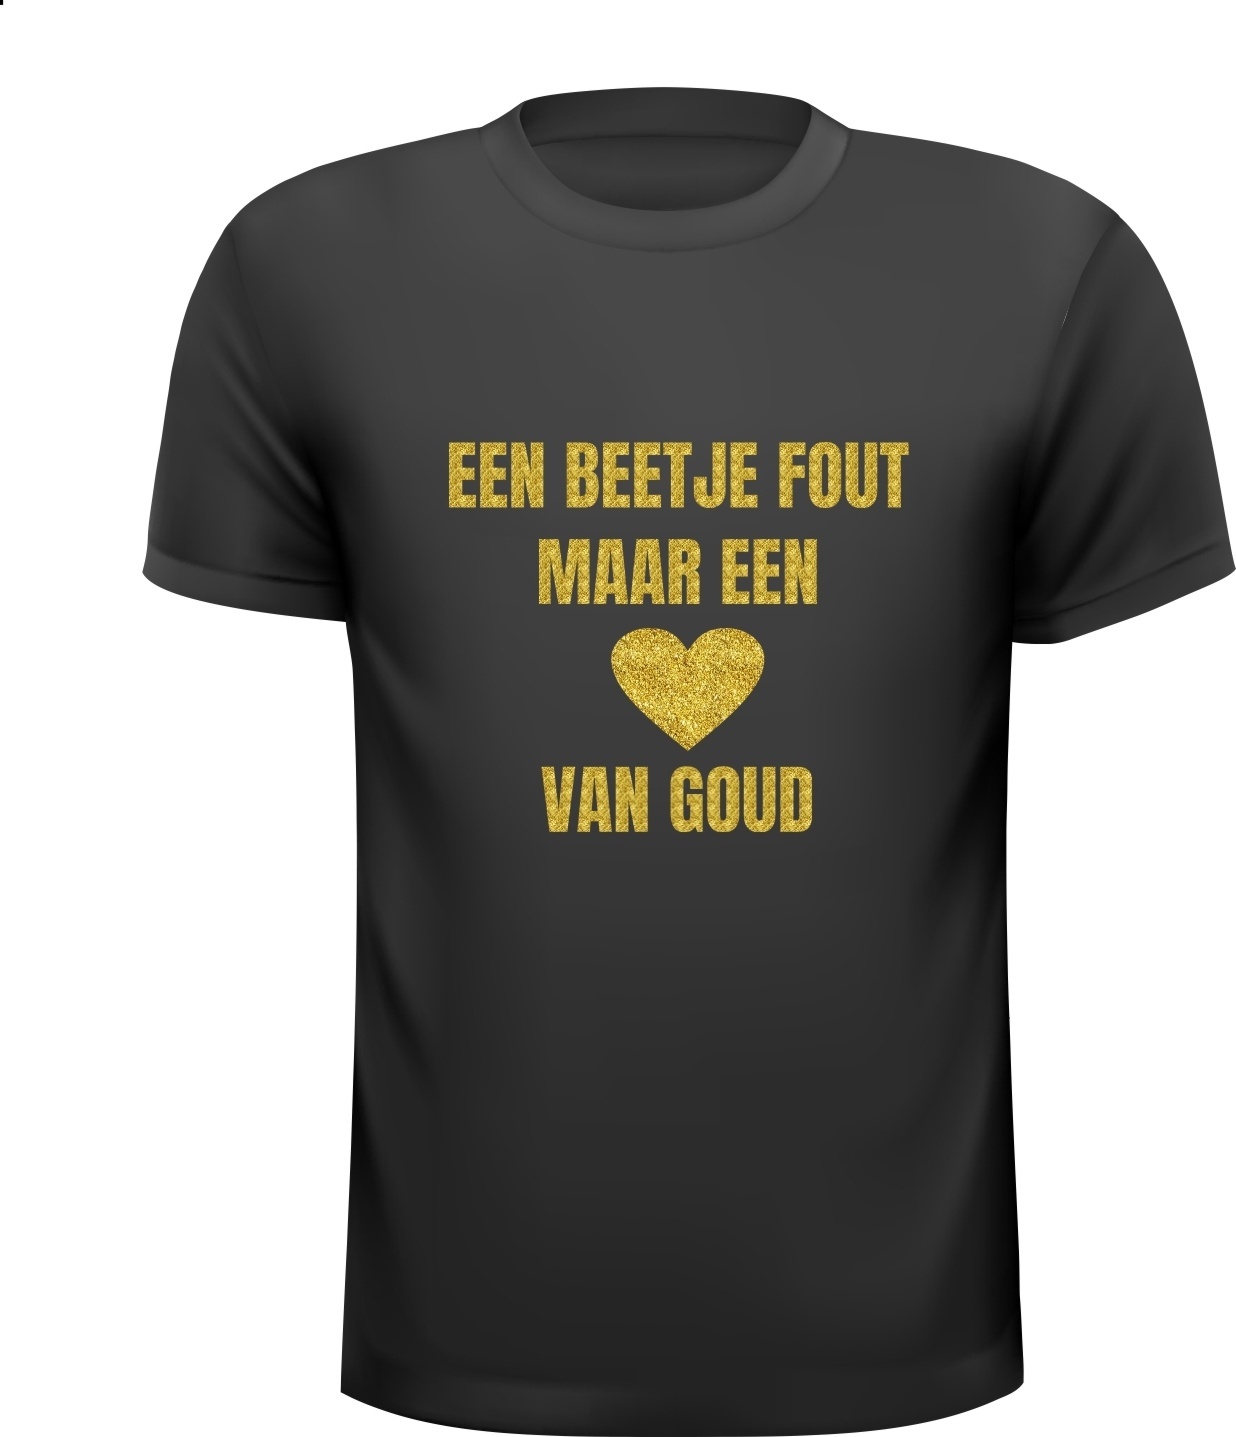 Vegetatie regering Retentie T-shirt een beetje fout maar een hart van goud ...